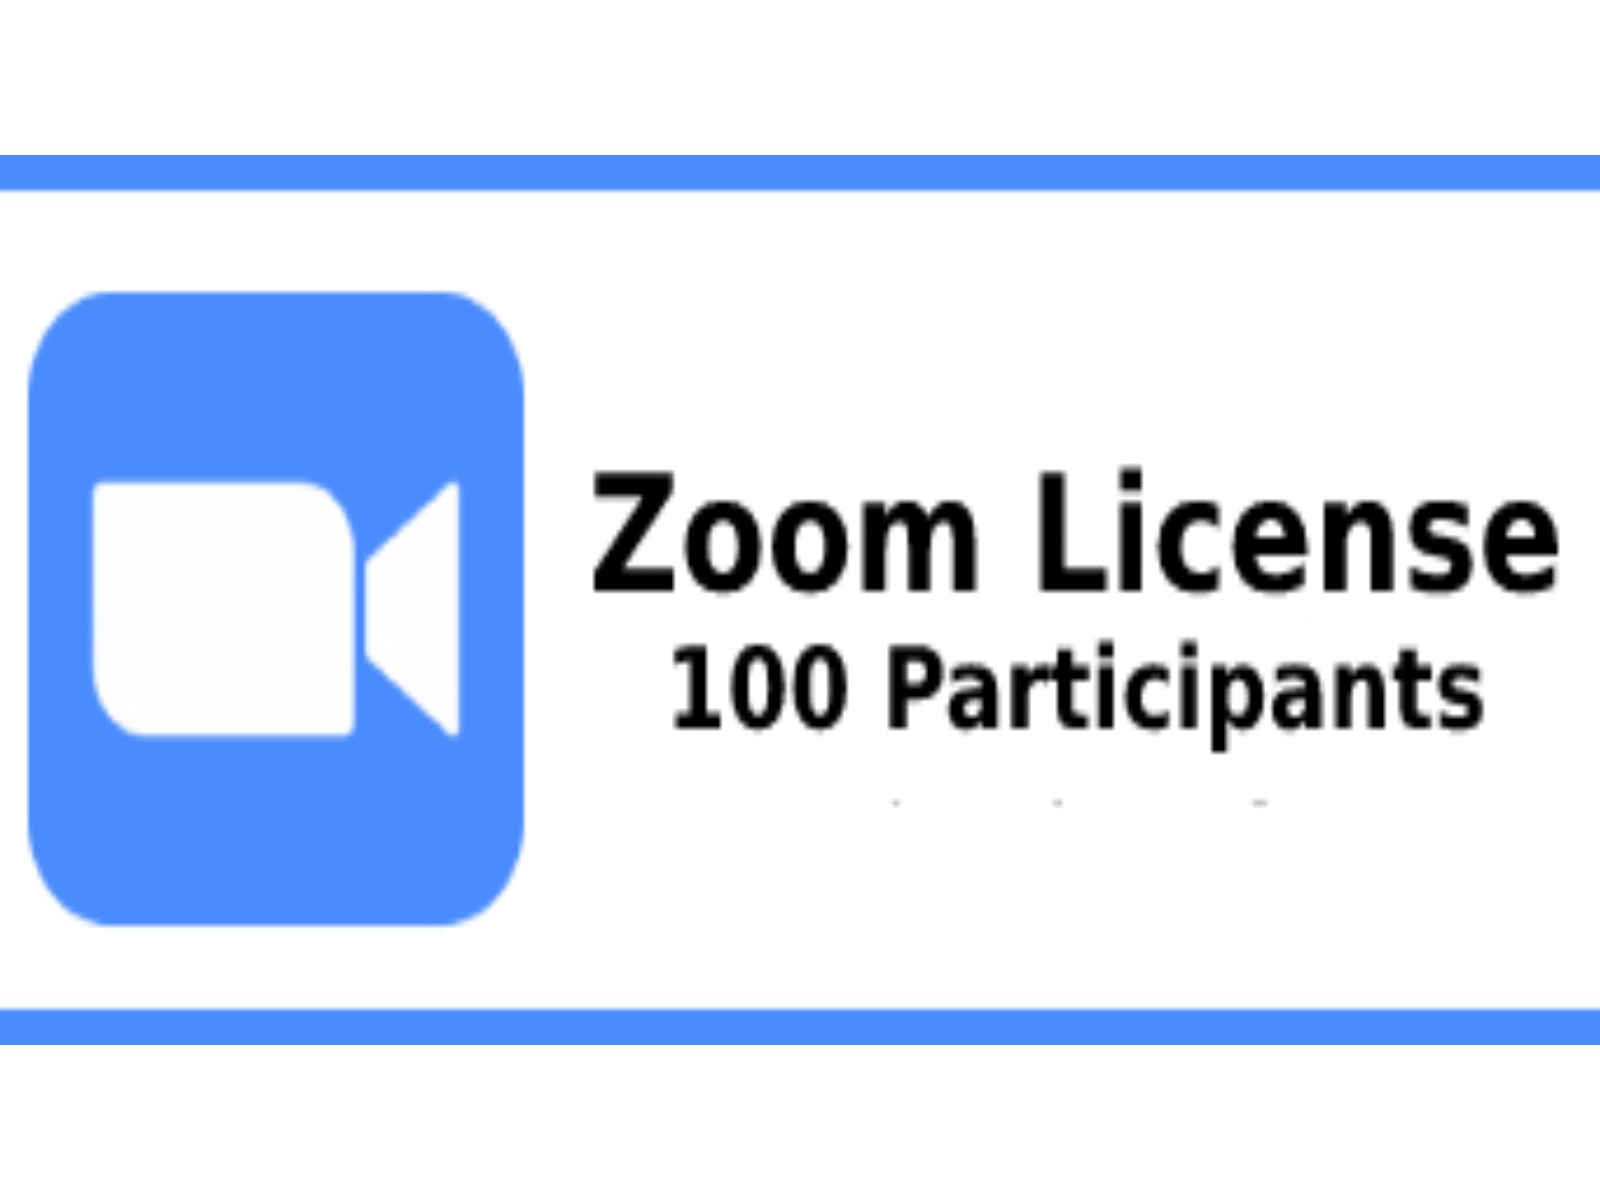 Zoom License - 100 participants